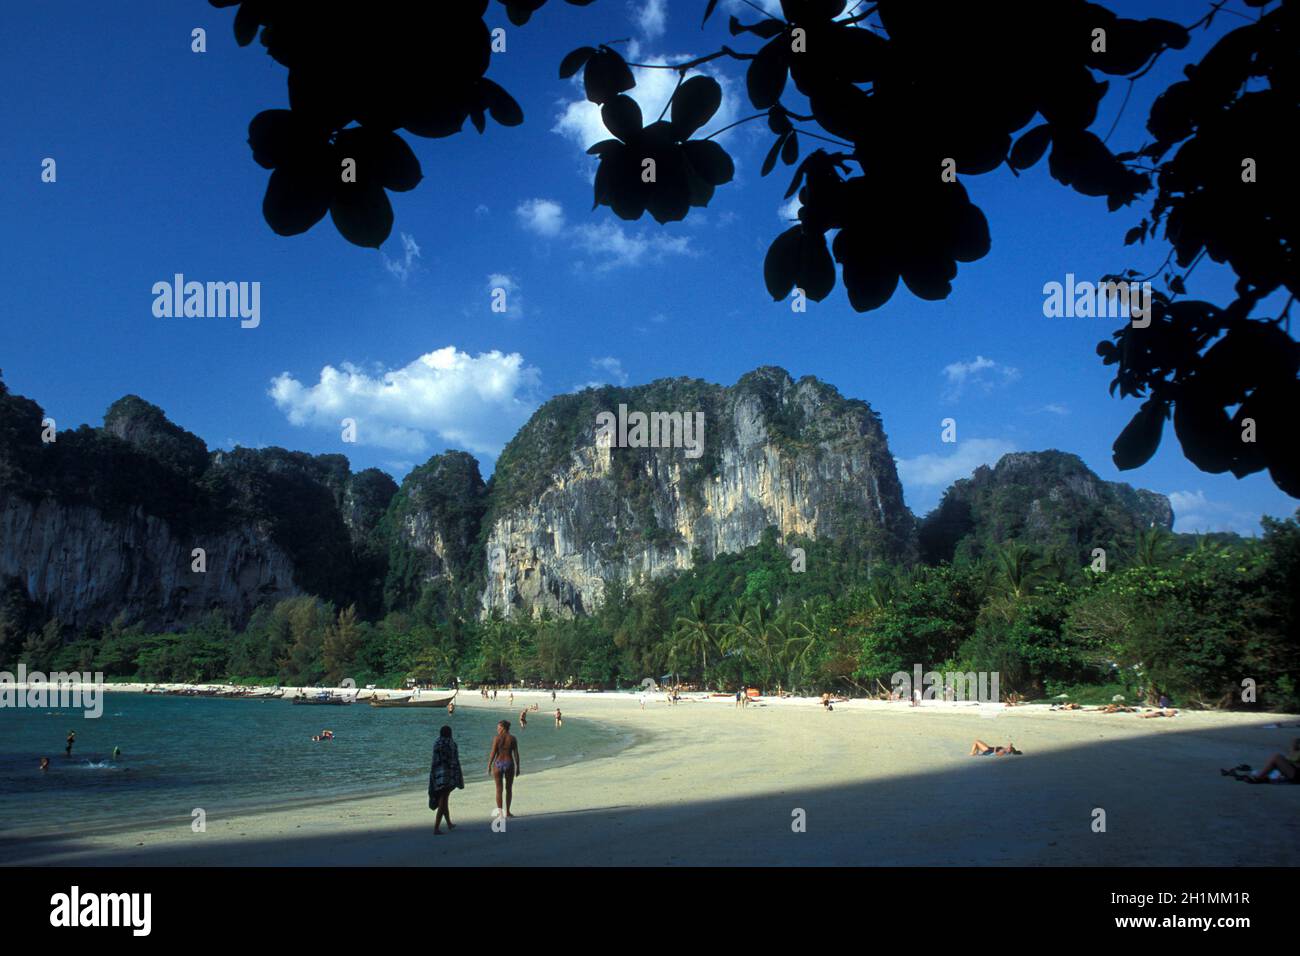 Der Strand am hat Phra Nang Strand bei Railay bei Ao Nang die Stadt Krabi an der Andamanensee im Süden Thailands. Thailand, Krabi, April, Stockfoto